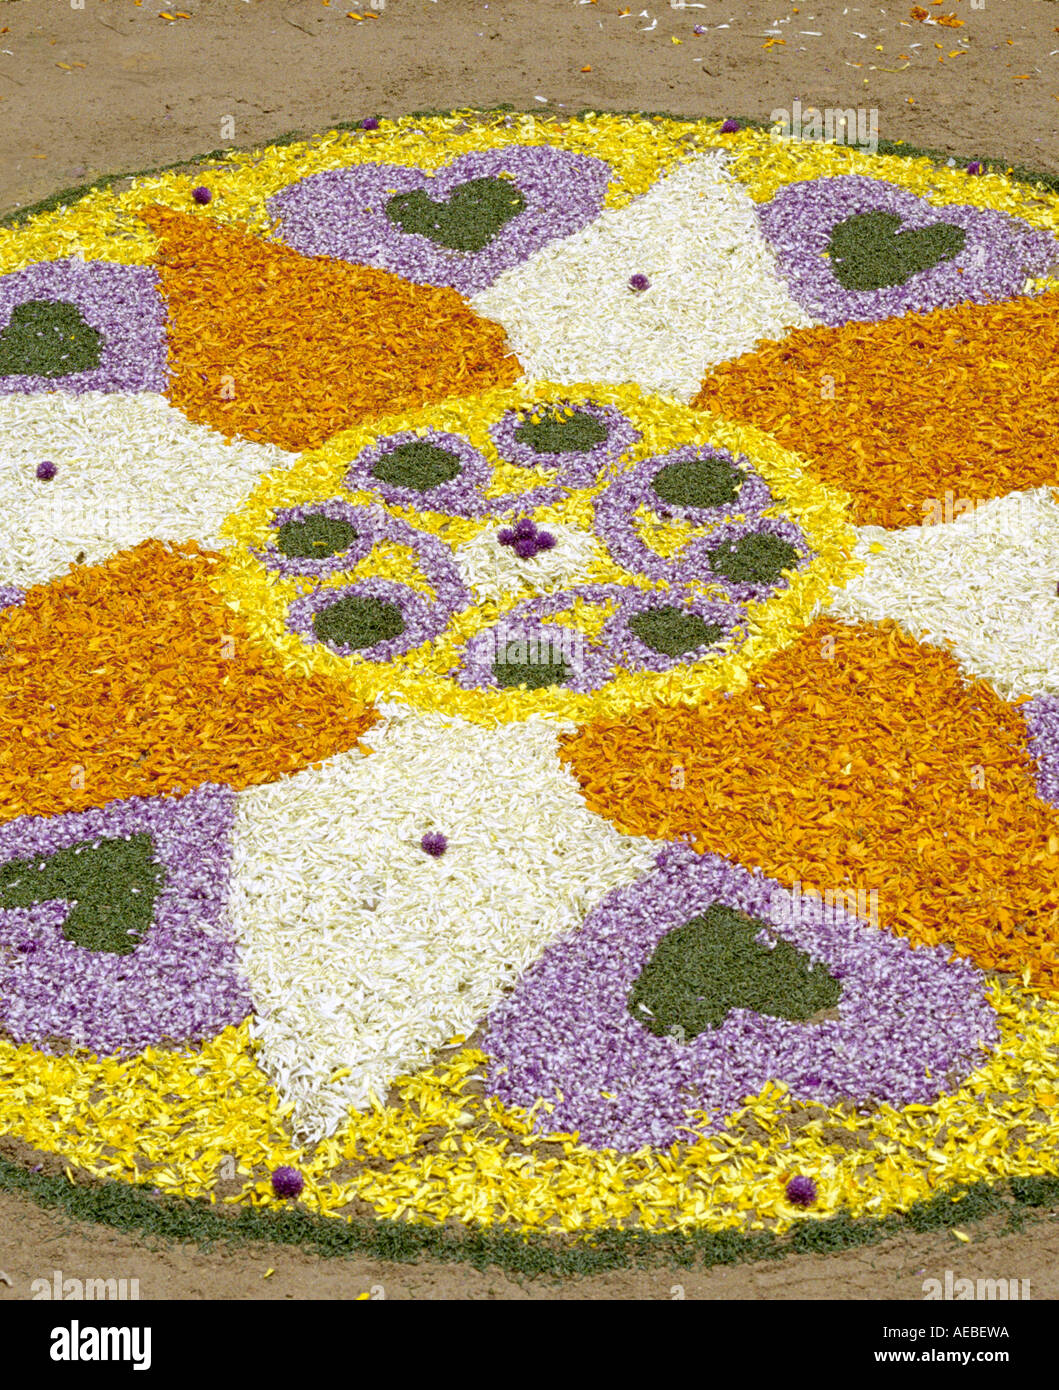 Une composition colorée préparée avec des pétales de fleurs, dessiné sur le sol à l'occasion d'Onam au Kerala, en Inde Banque D'Images